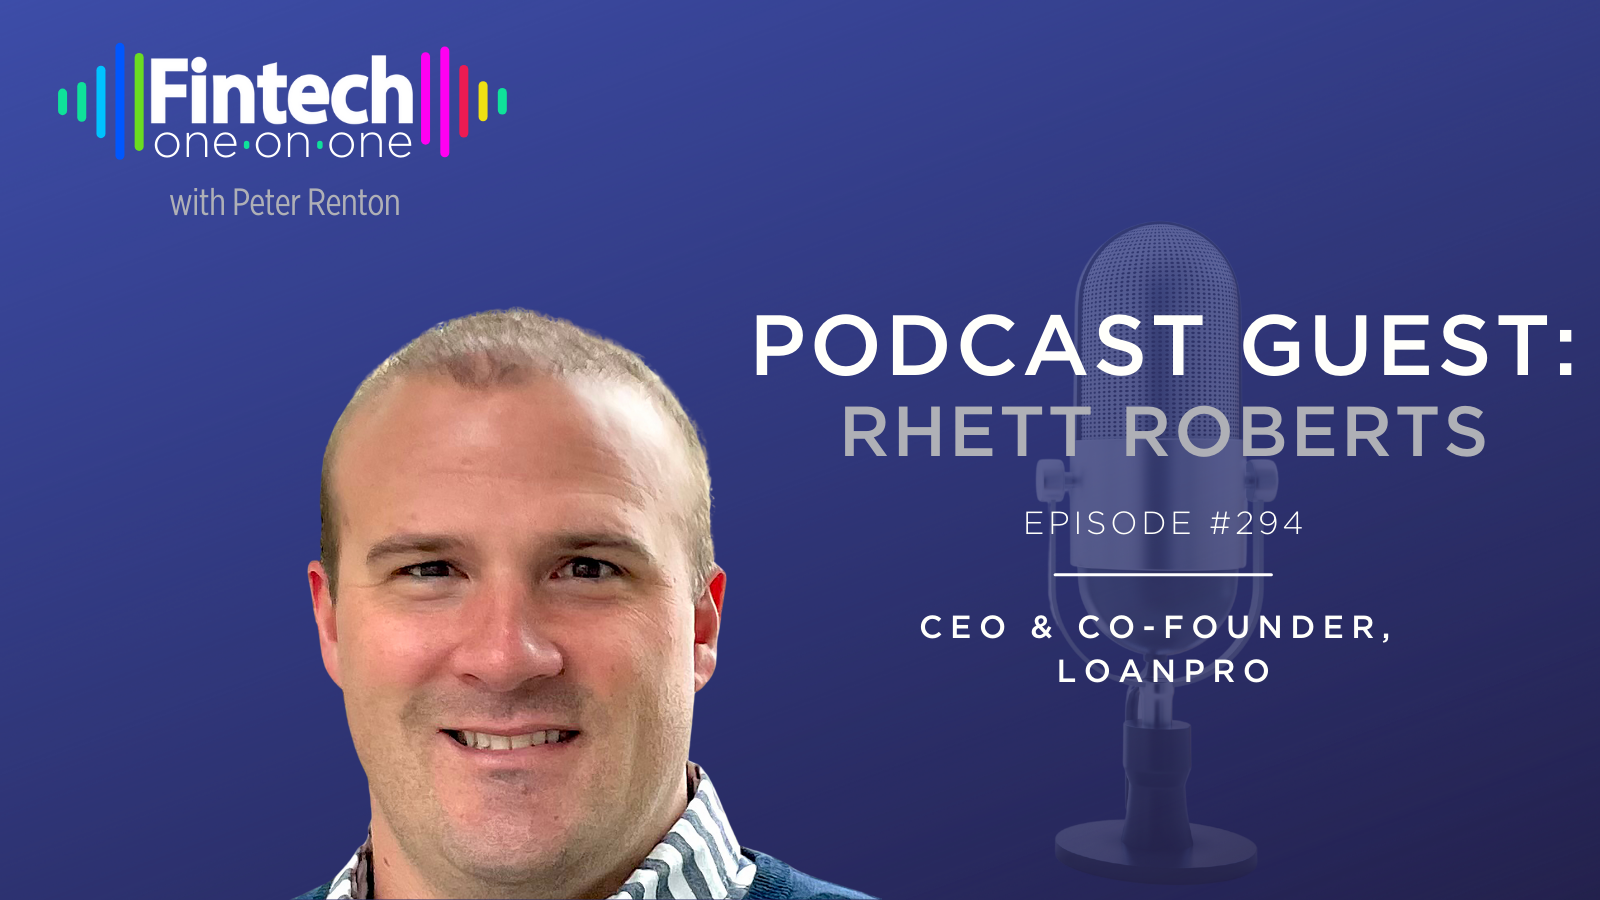 Rhett Roberts, Co-Founder & CEO of LoanPro